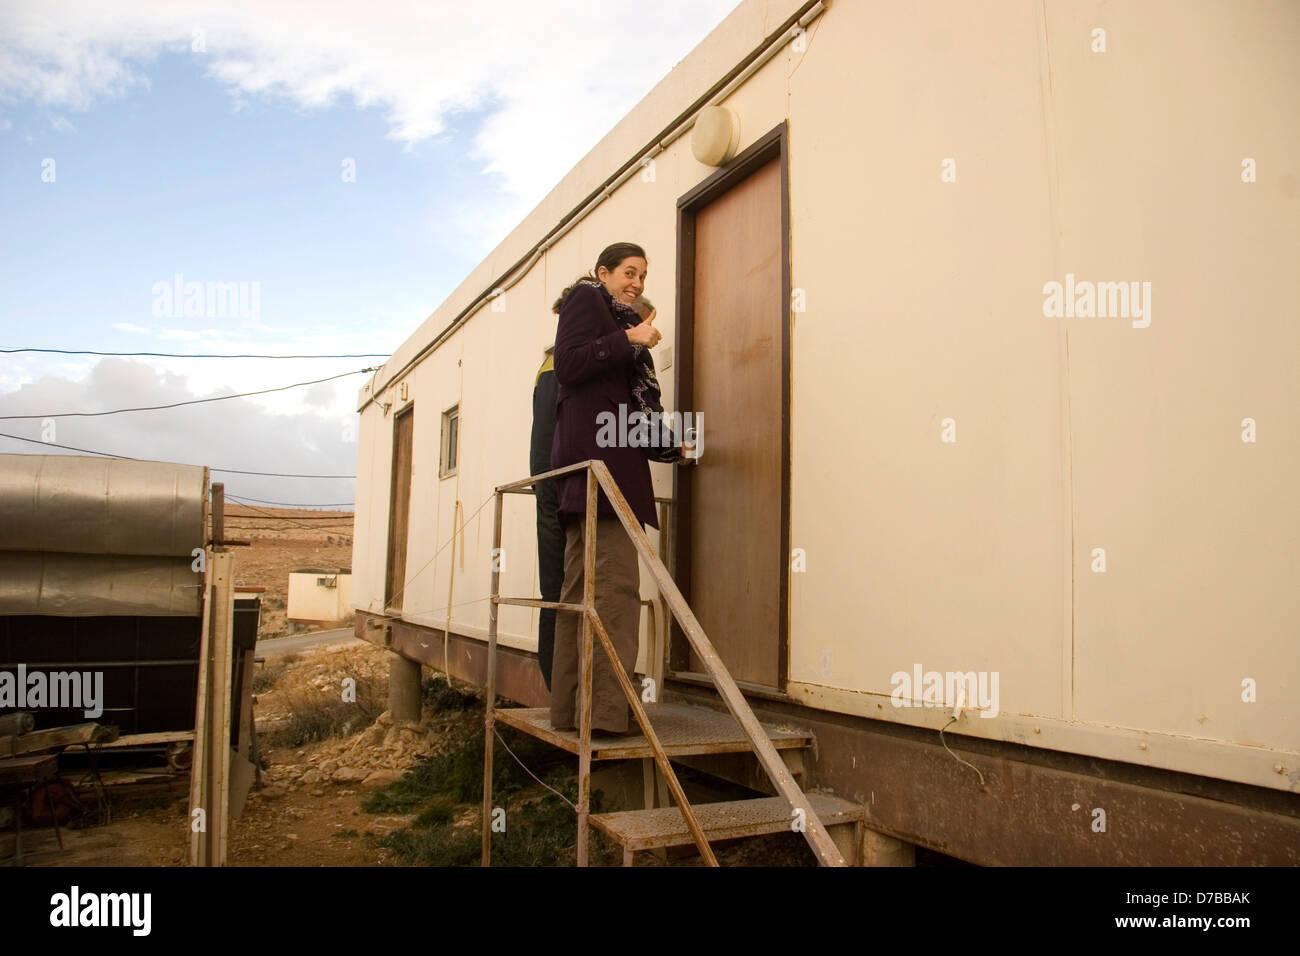 Nuevo colono entra en su casa móvil en Kfar Eldad Foto de stock